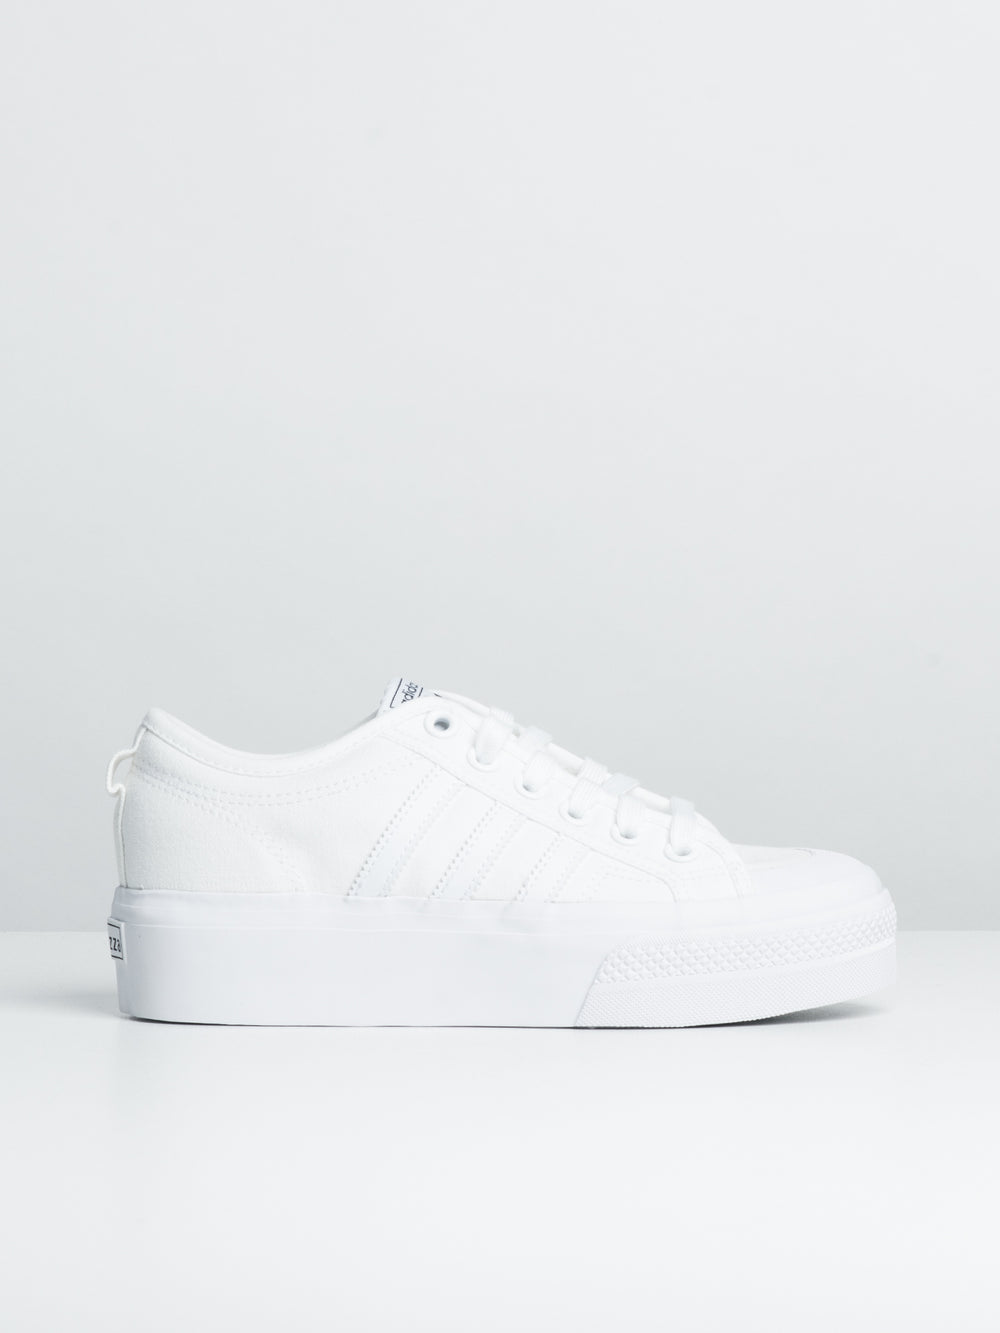 adidas Nizza Platform Shoes - White | Unisex Lifestyle | adidas US